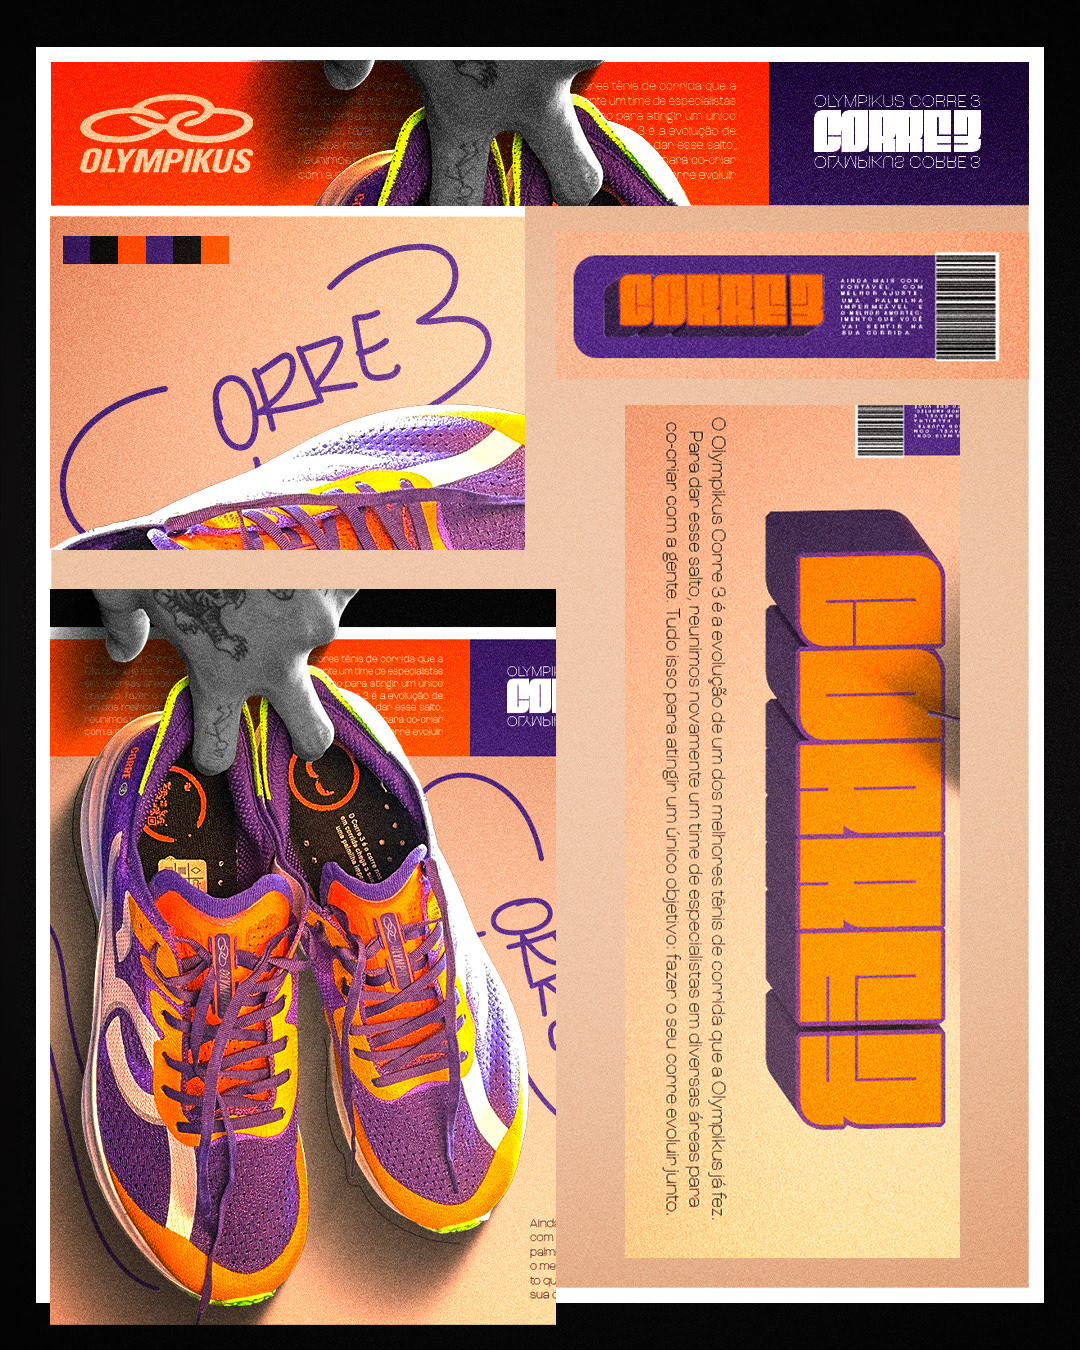 olympikus run corrida tenis running shoes roxo purple yellow Corre 3 sneaker